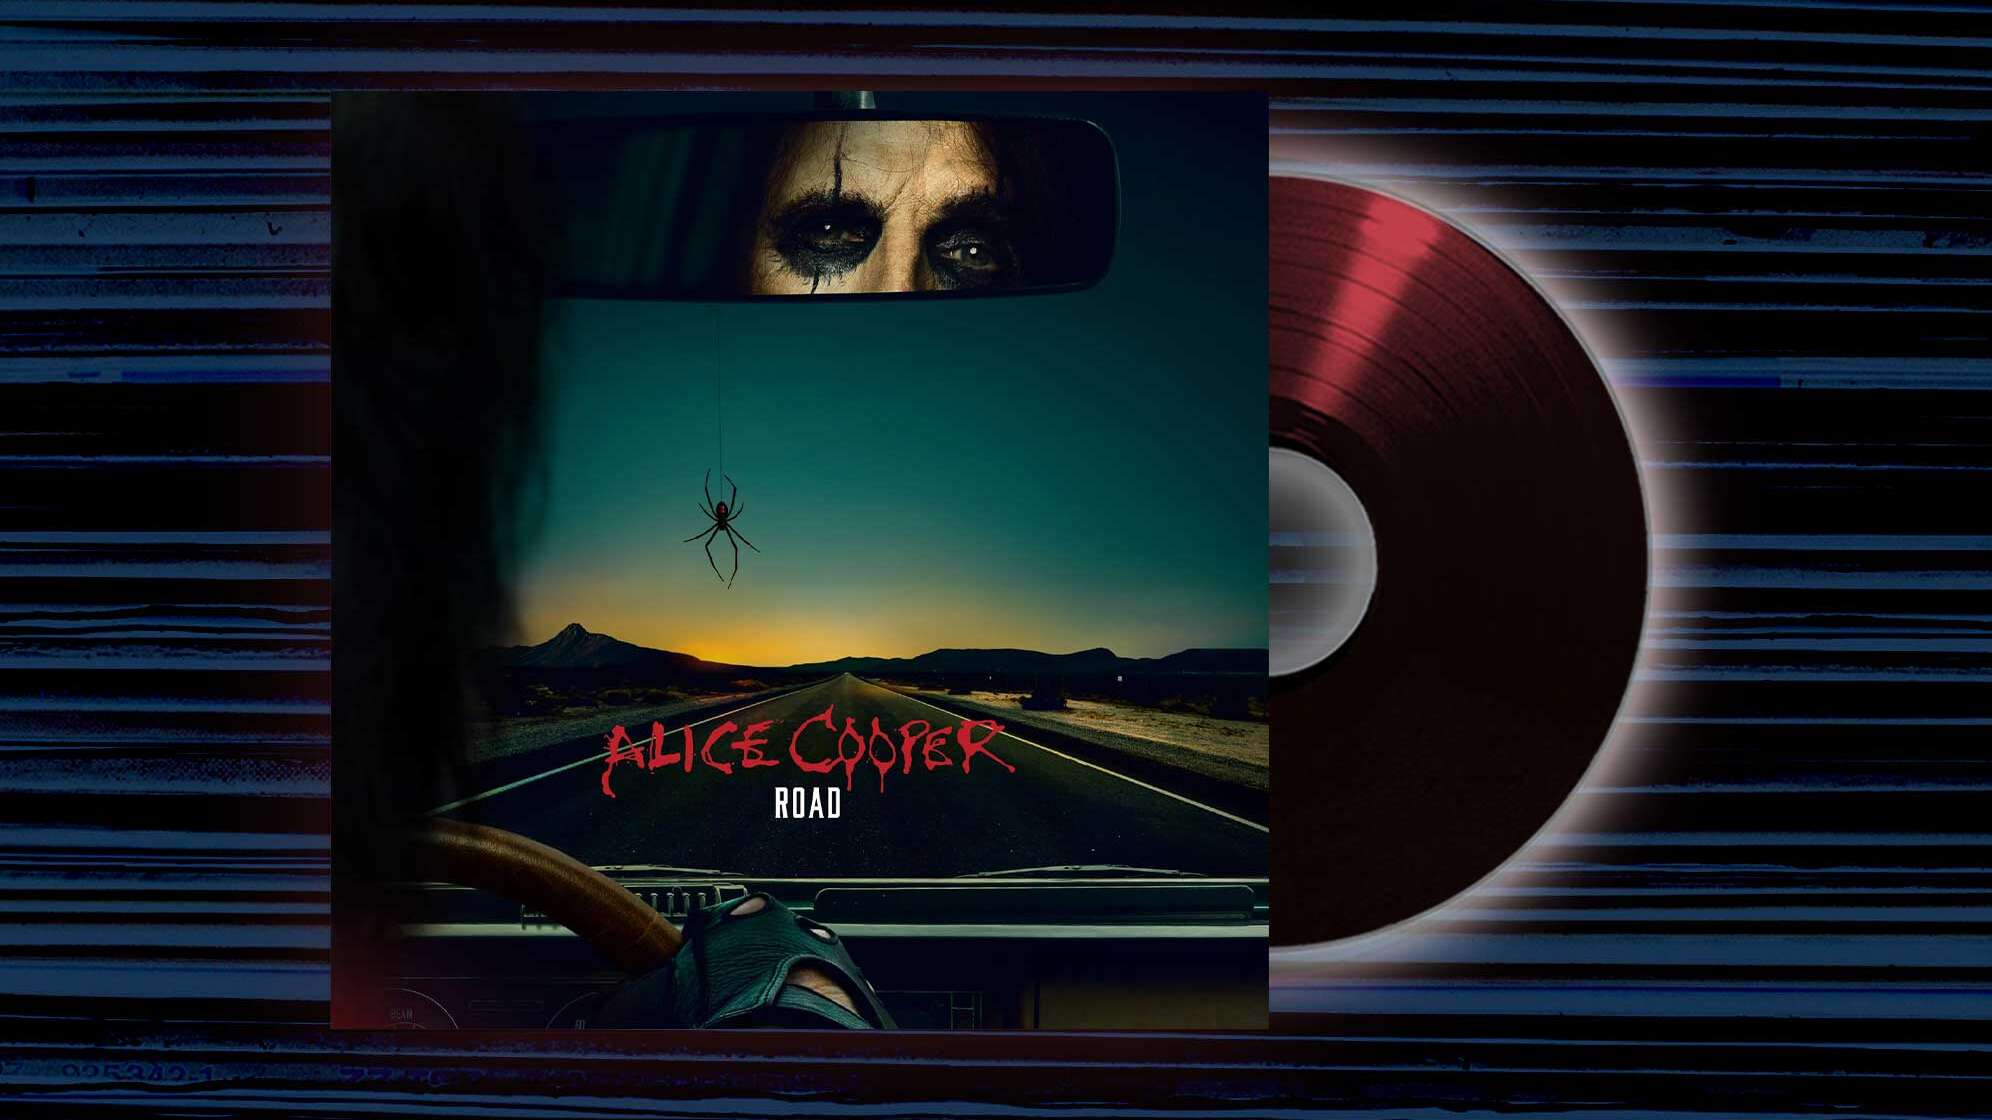 Das Albumcover von Alice Cooper "Road"